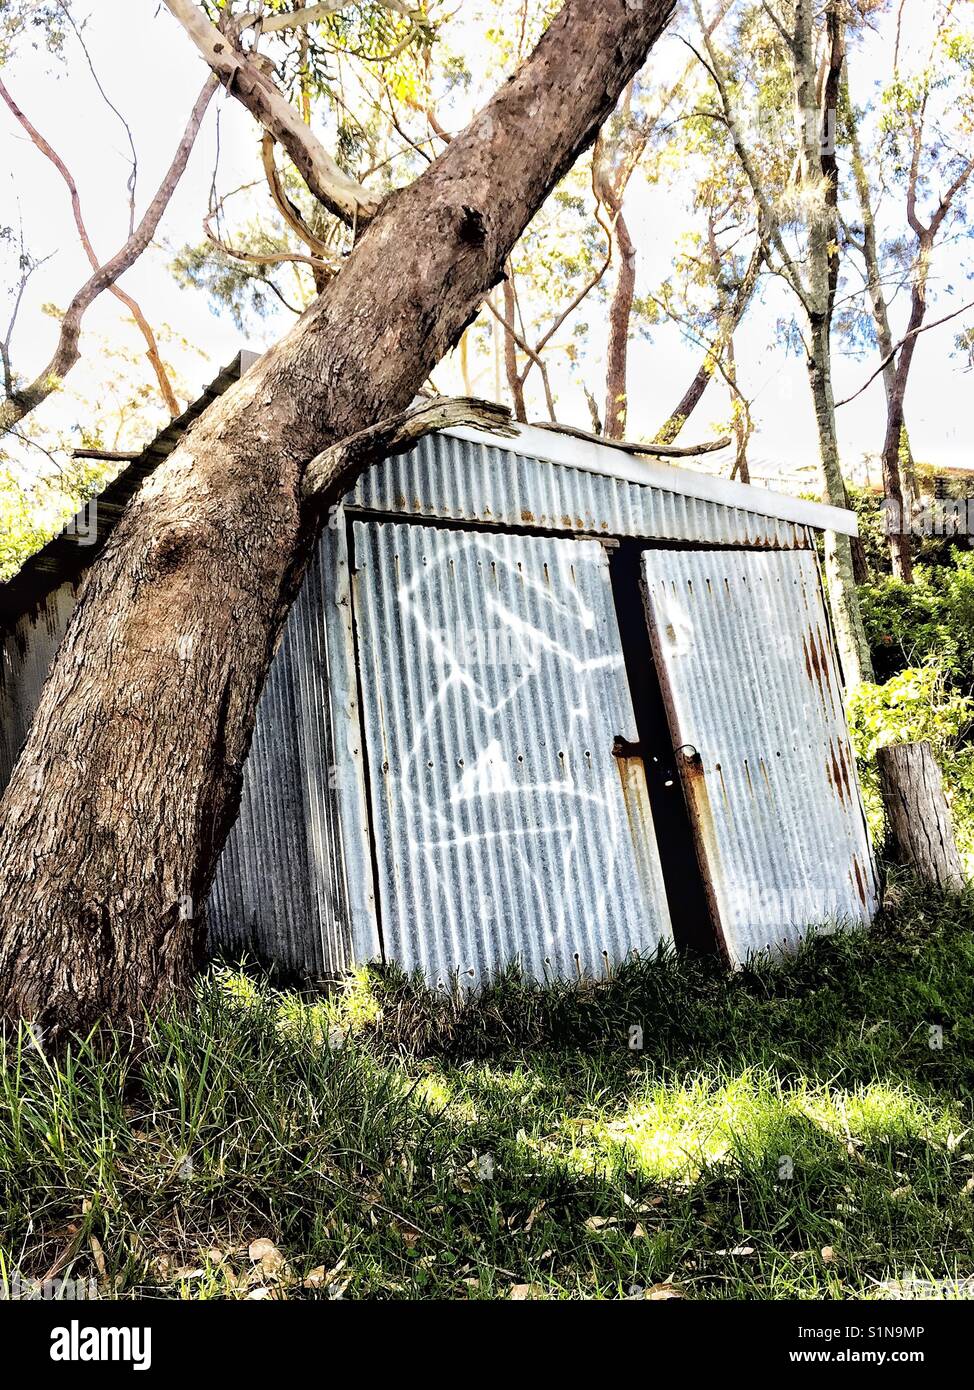 Tronc de l'arbre s'appuie contre l'étain ancien hangar couvert de graffitis. fond naturel. L'Australie Banque D'Images